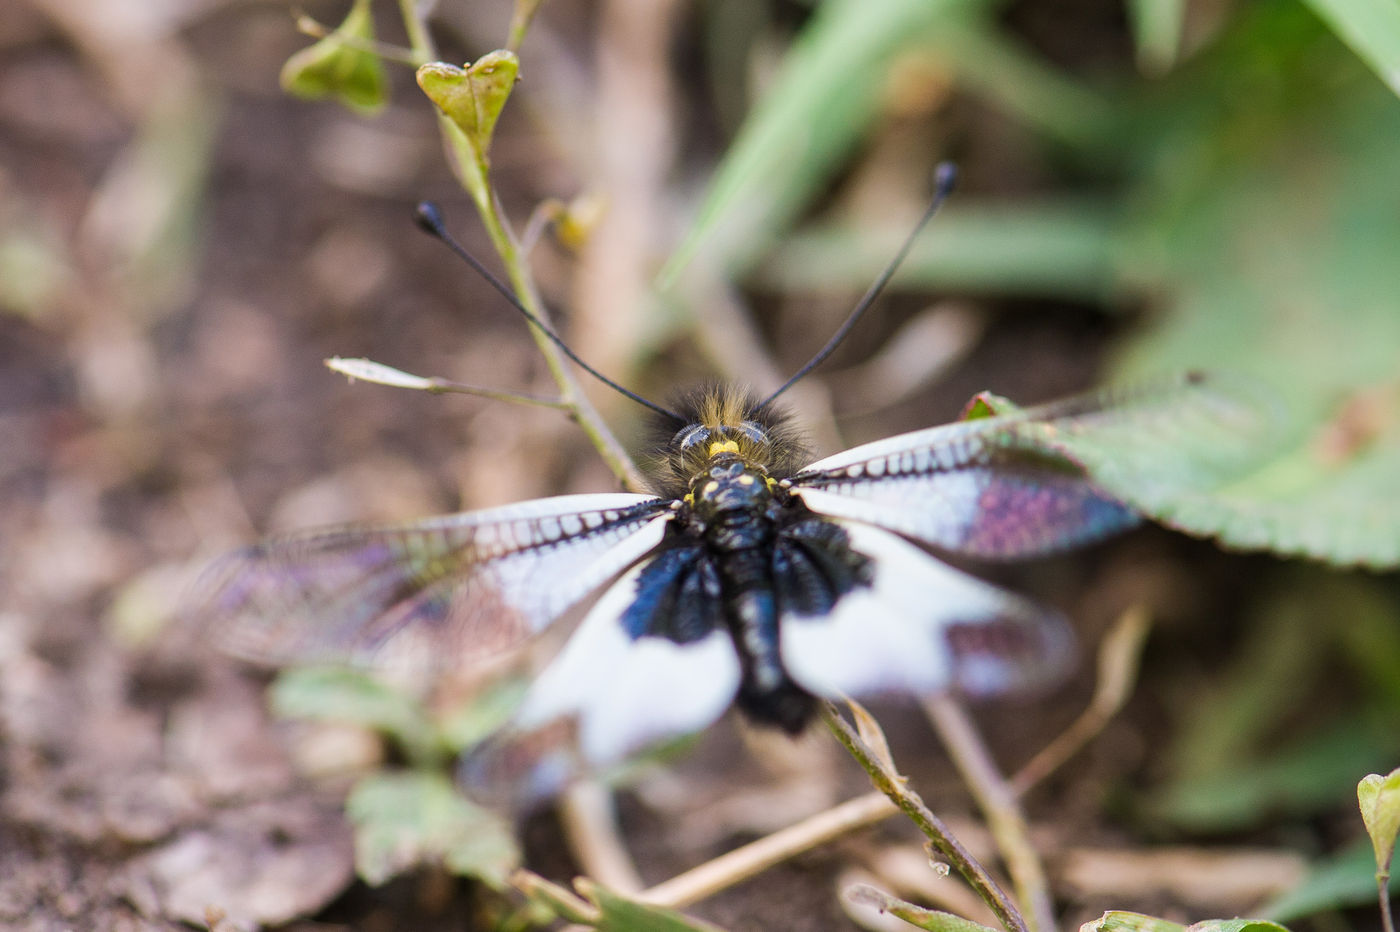 Vlinderhaften zijn een 'missing link' tussen vlinders en libellen, en dat is ook exact hoe ze eruit zien. © Billy Herman